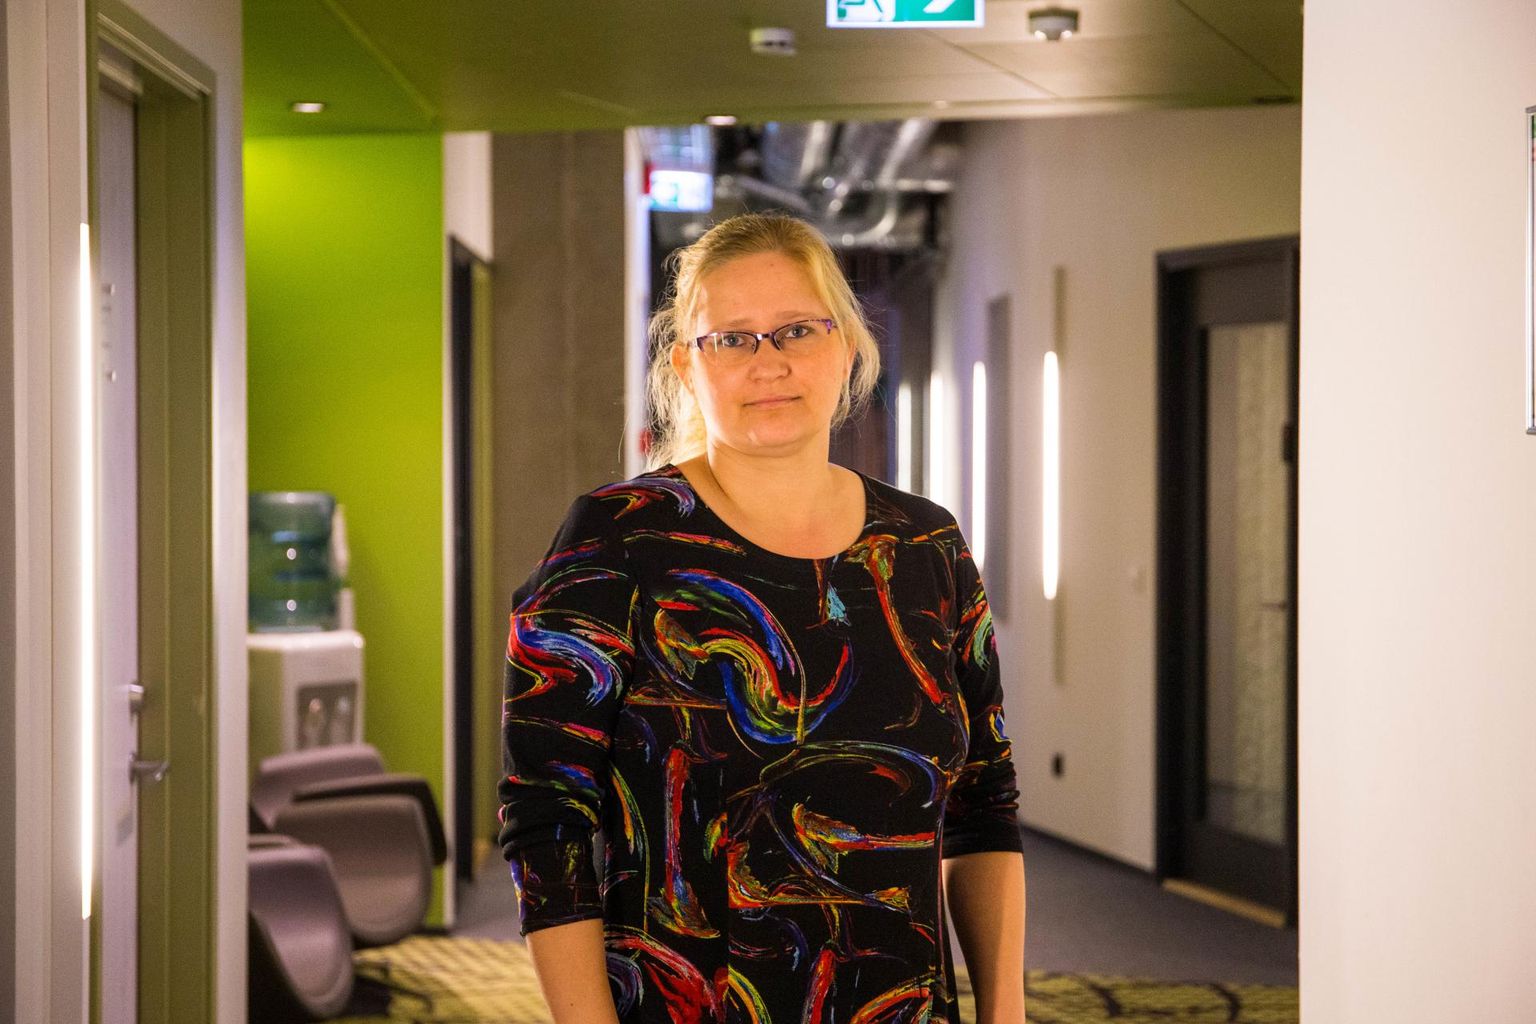 Aasta sotsiaaltöötajaks valitud Rakvere sotsiaalosakonna juhataja Kersti Suun-Deket pälvis tänavu ka Eestimaa uhkuse tiitli.